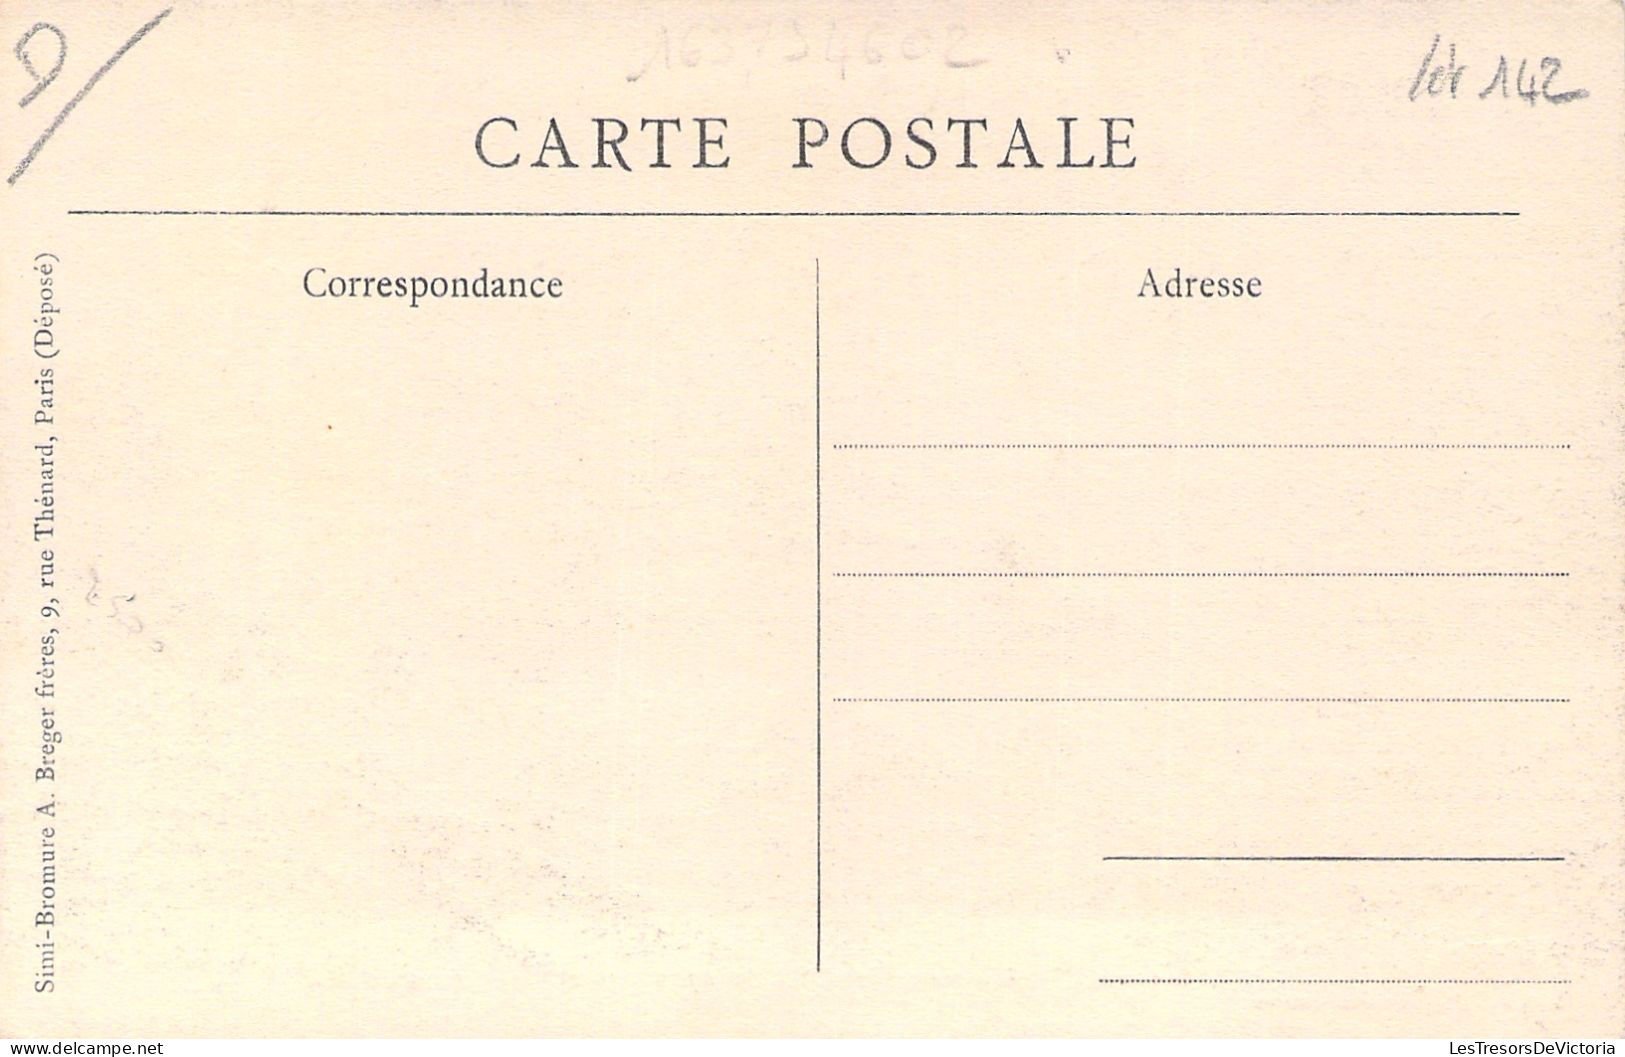 NOUVELLE CALEDONIE - Noumea - Vallée Du Génie Et Caserne D'infanterie - Carte Postale Ancienne - Nieuw-Caledonië